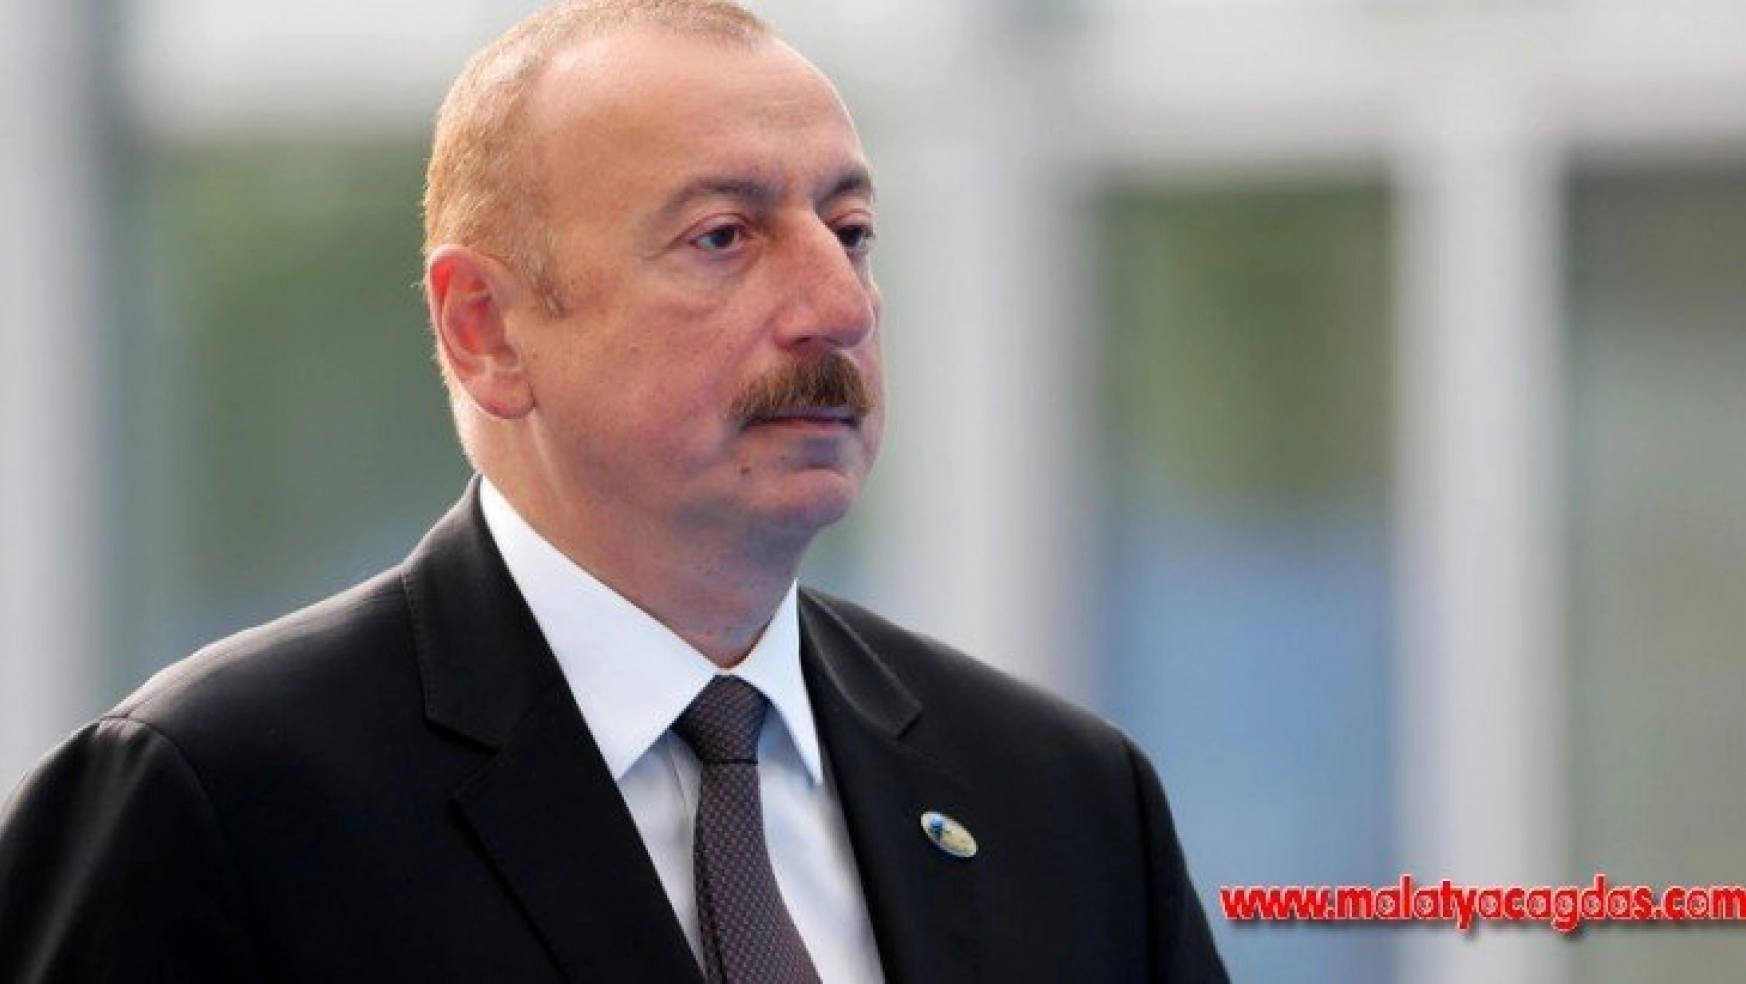 Azerbaycan Cumhurbaşkanı Aliyev'den Cumhurbaşkanı Erdoğan'a taziye mesajı